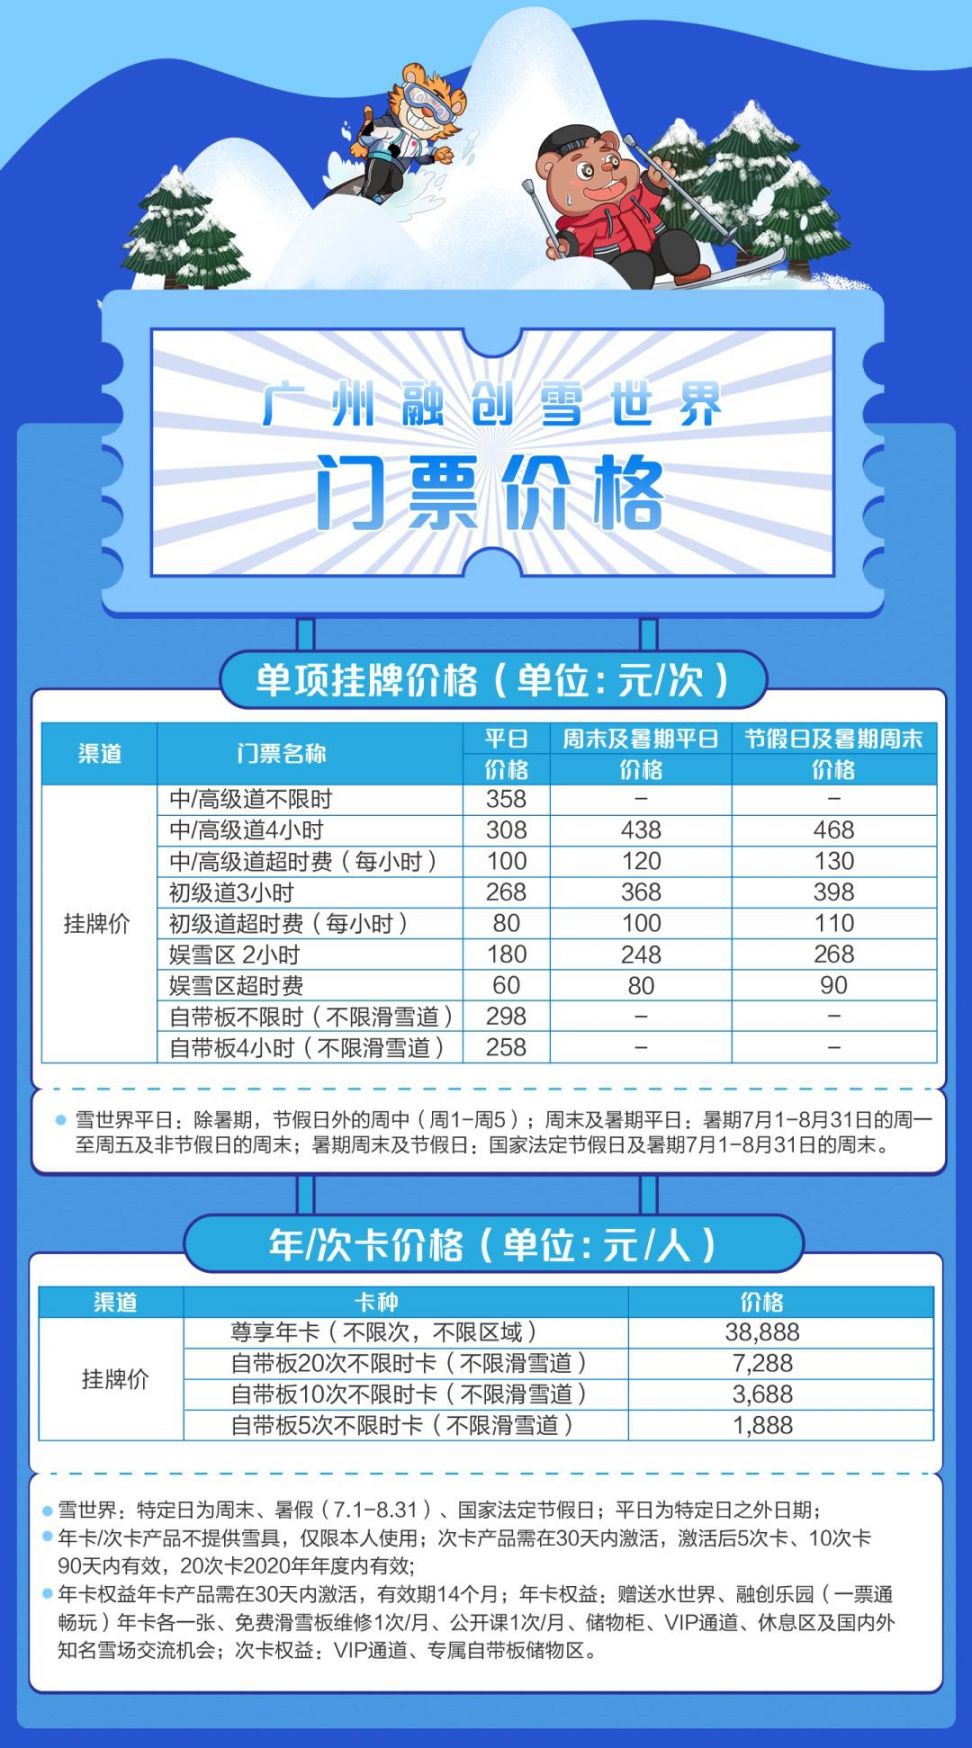 2020年最新广州融创乐园门票价格一览